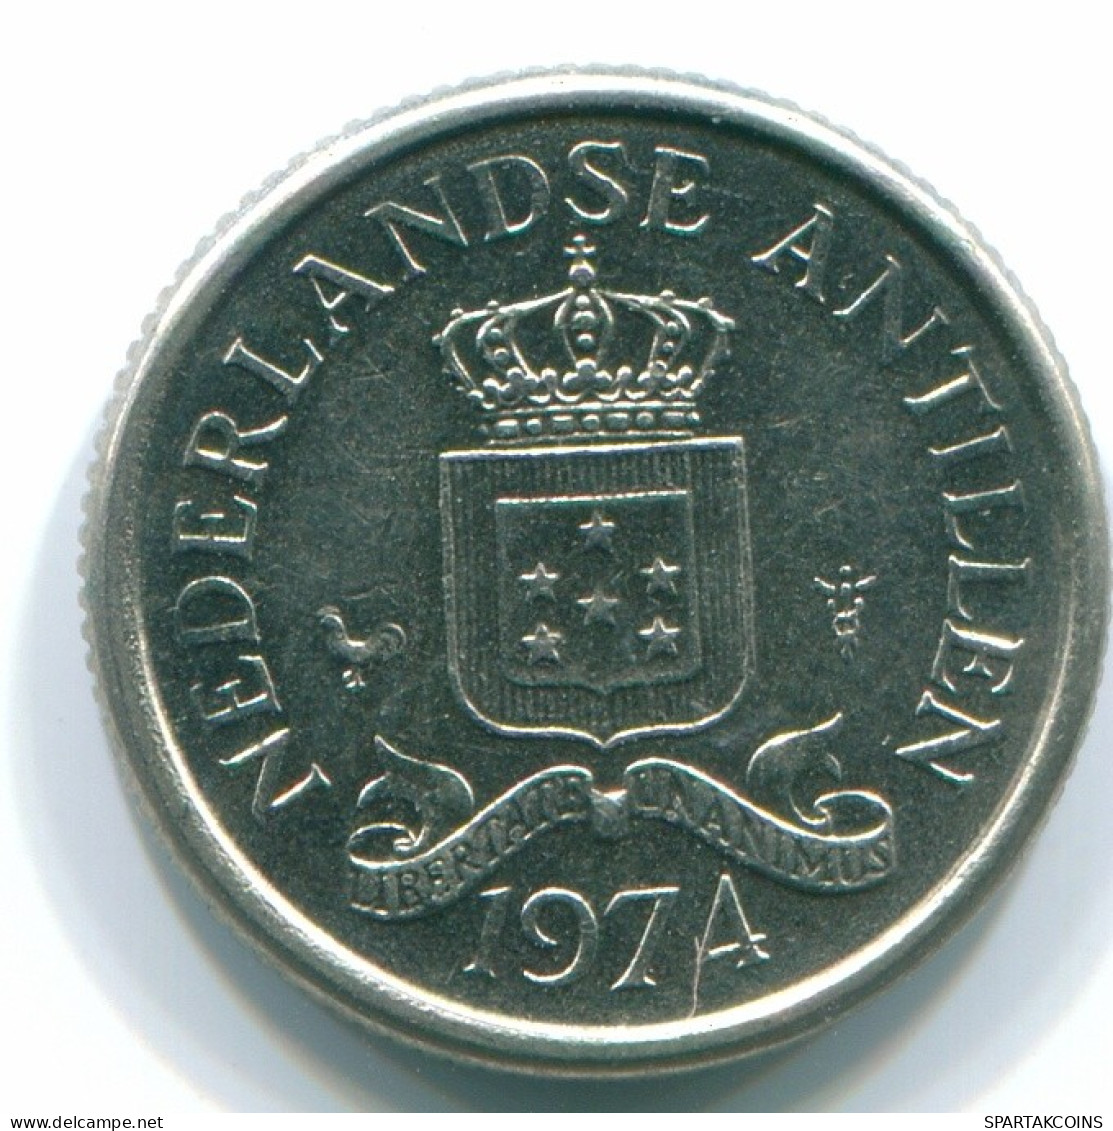 10 CENTS 1974 NIEDERLÄNDISCHE ANTILLEN Nickel Koloniale Münze #S13525.D.A - Antilles Néerlandaises